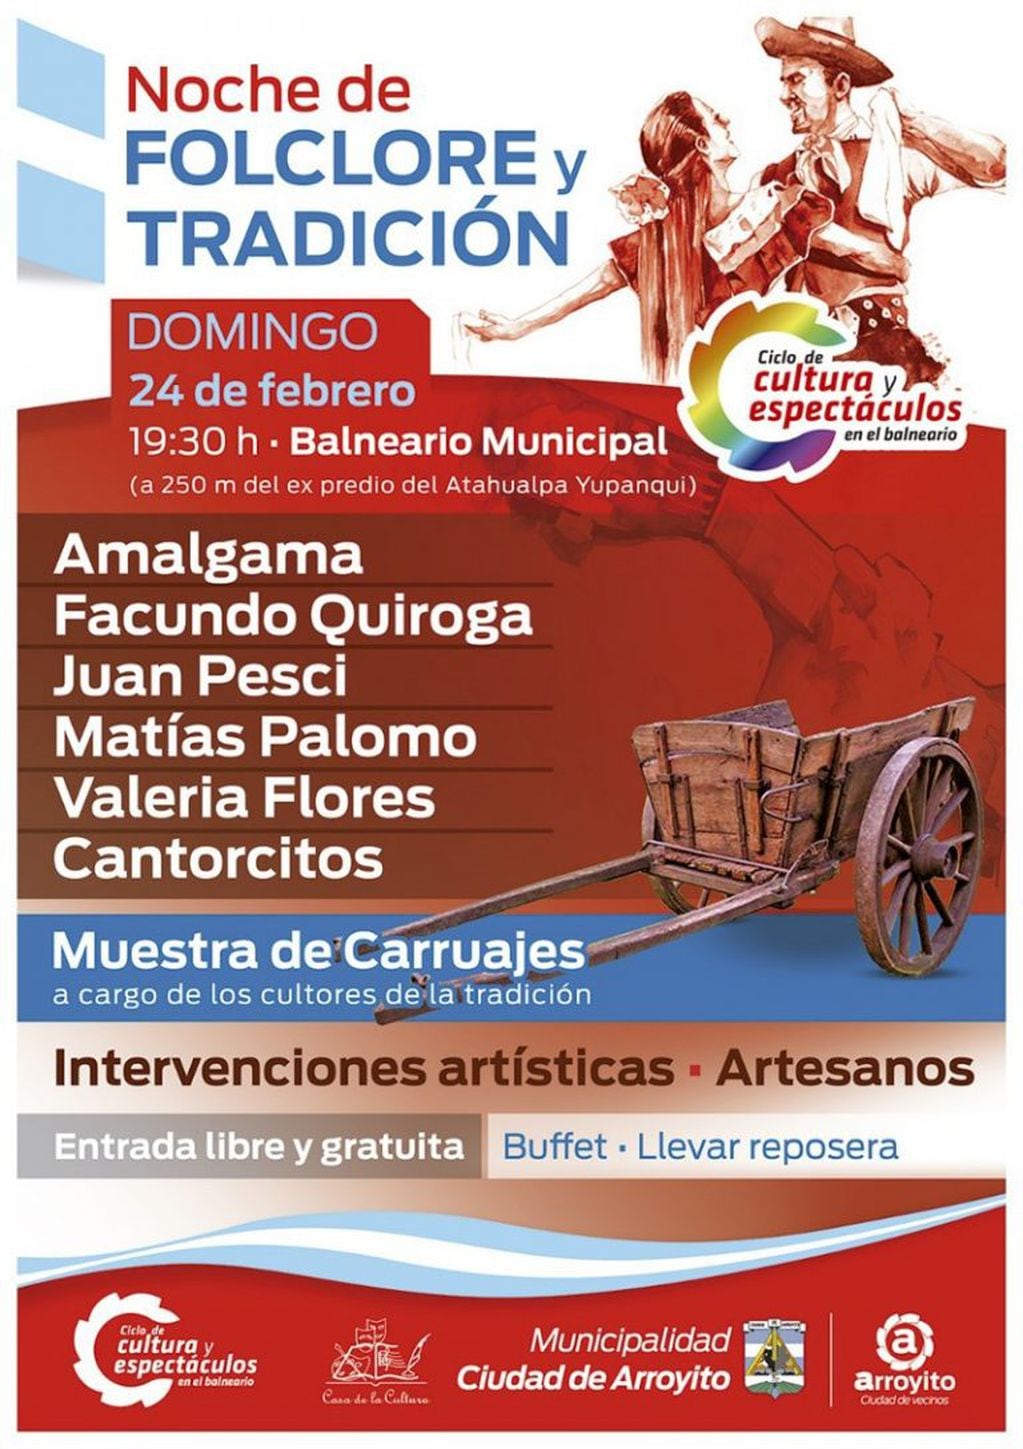 Invitación a la noche de folclore y tradición en Arroyito